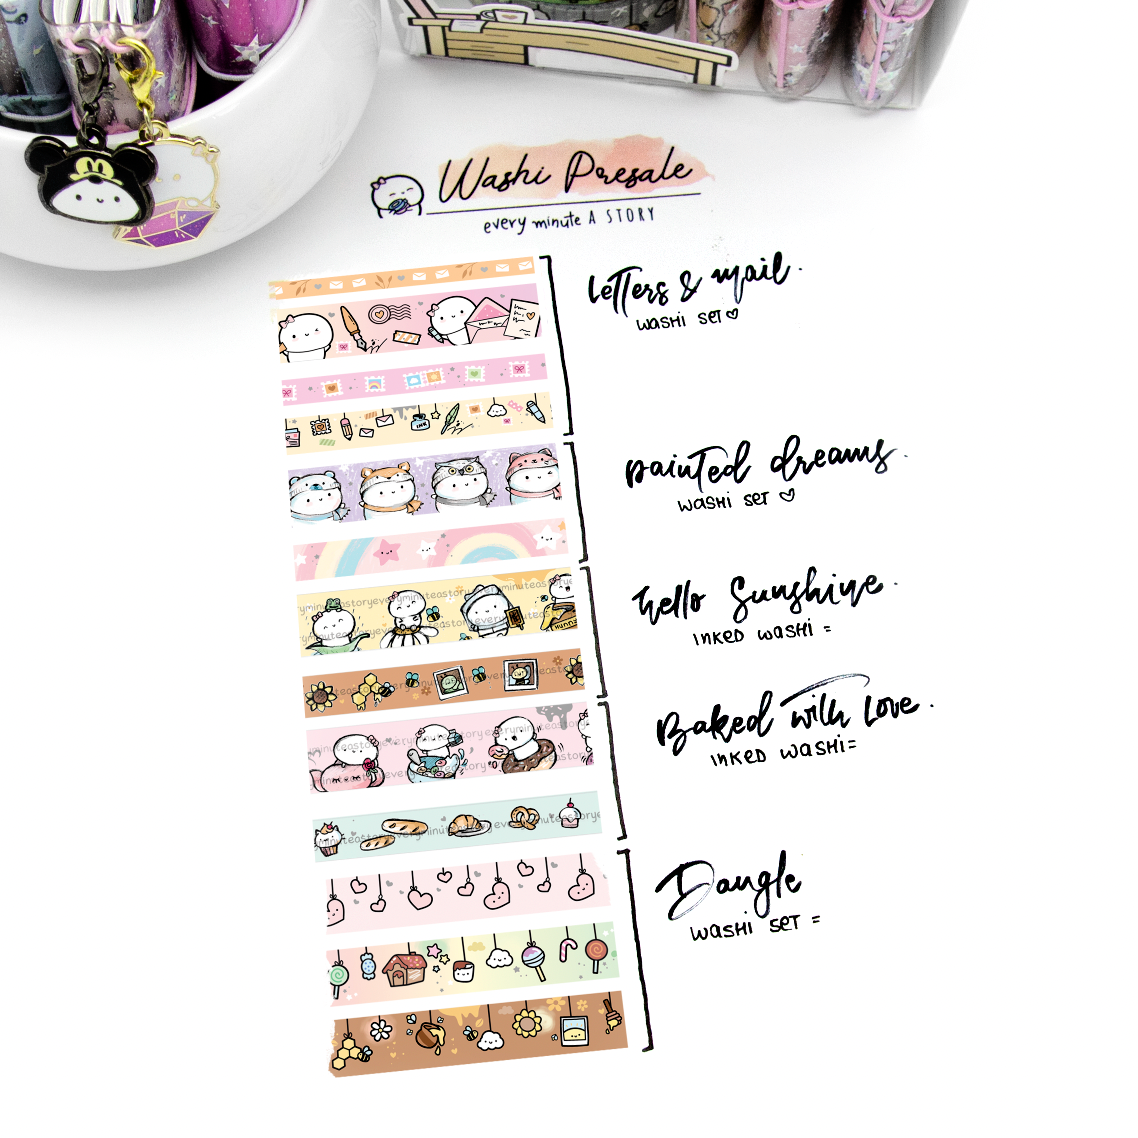 PRE-SALE! "Buy it all" pre-sale washi | All 5 pre-sale washi sets | One per order limit!